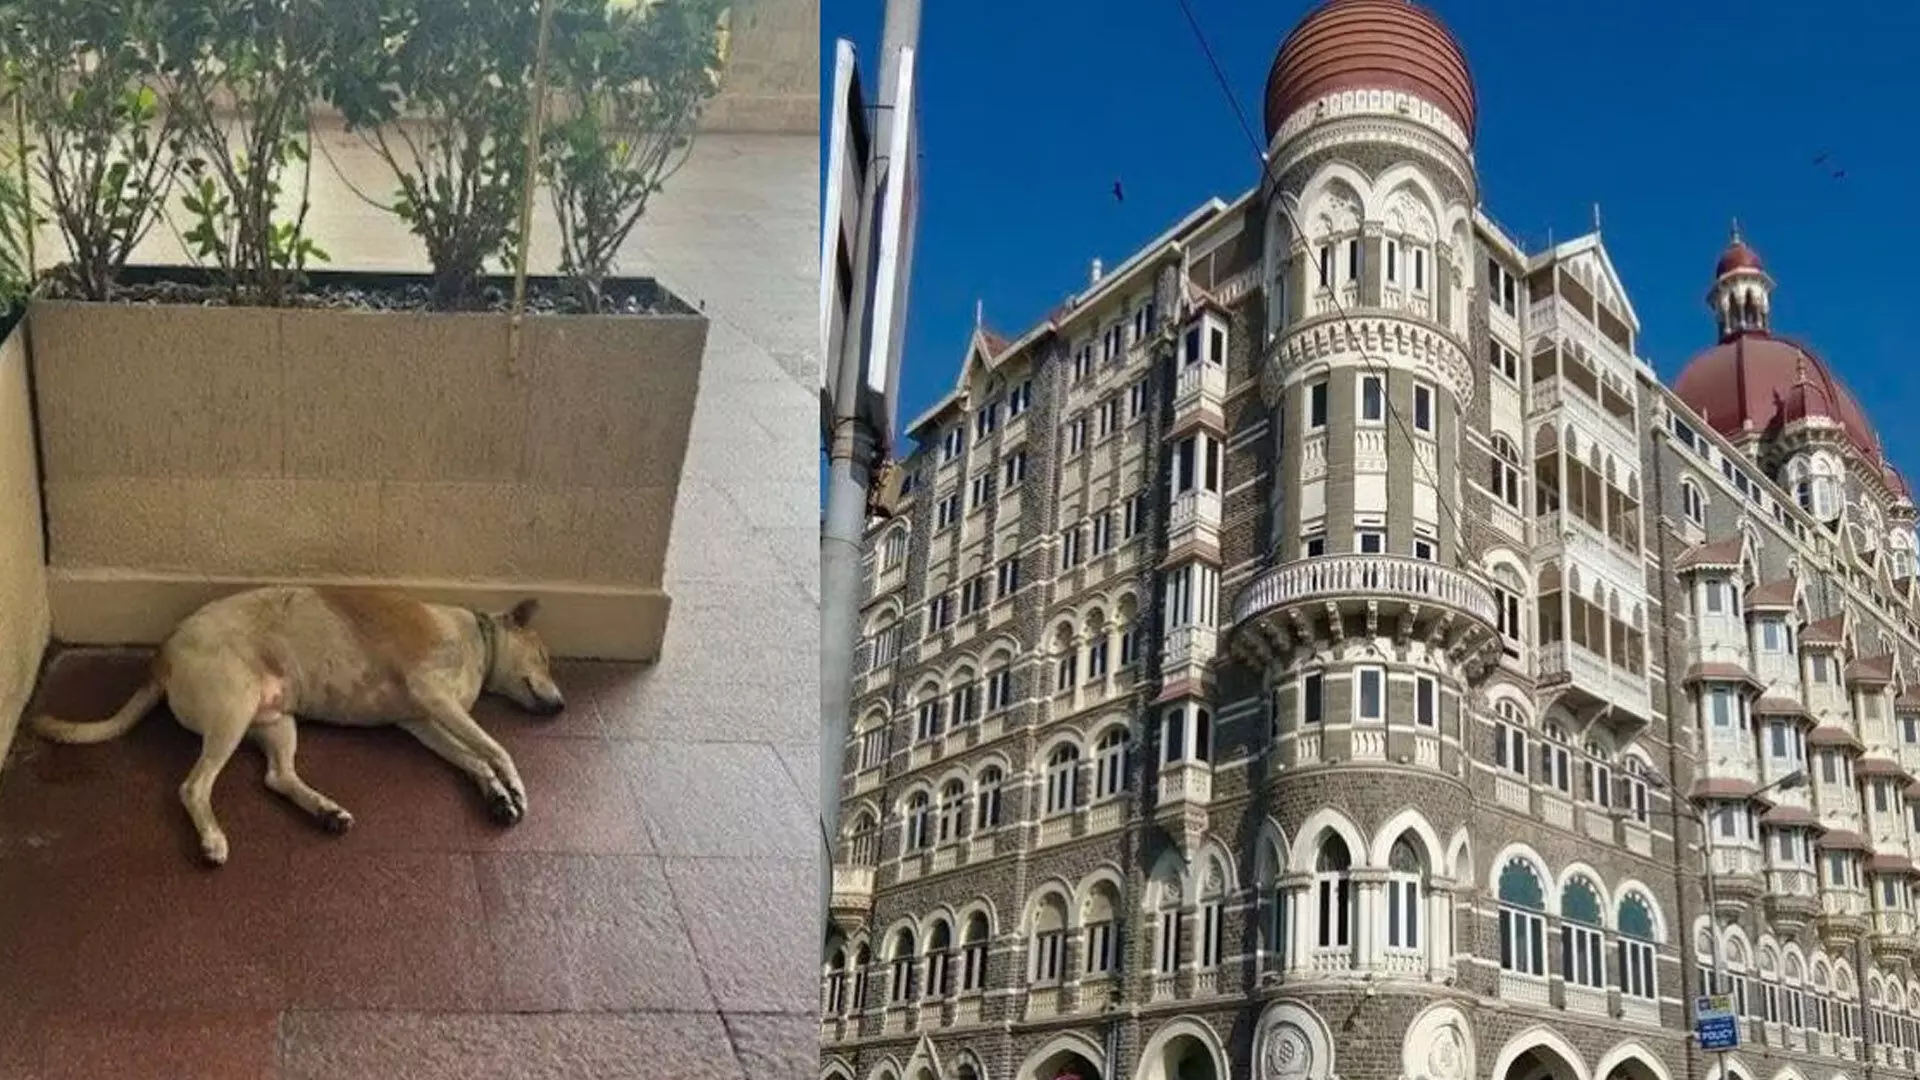 ताज होटल के द्वार पर आवारा कुत्ते ने ली झपकी, वायरल फोटो पोस्ट पर रतन टाटा की प्रतिक्रिया